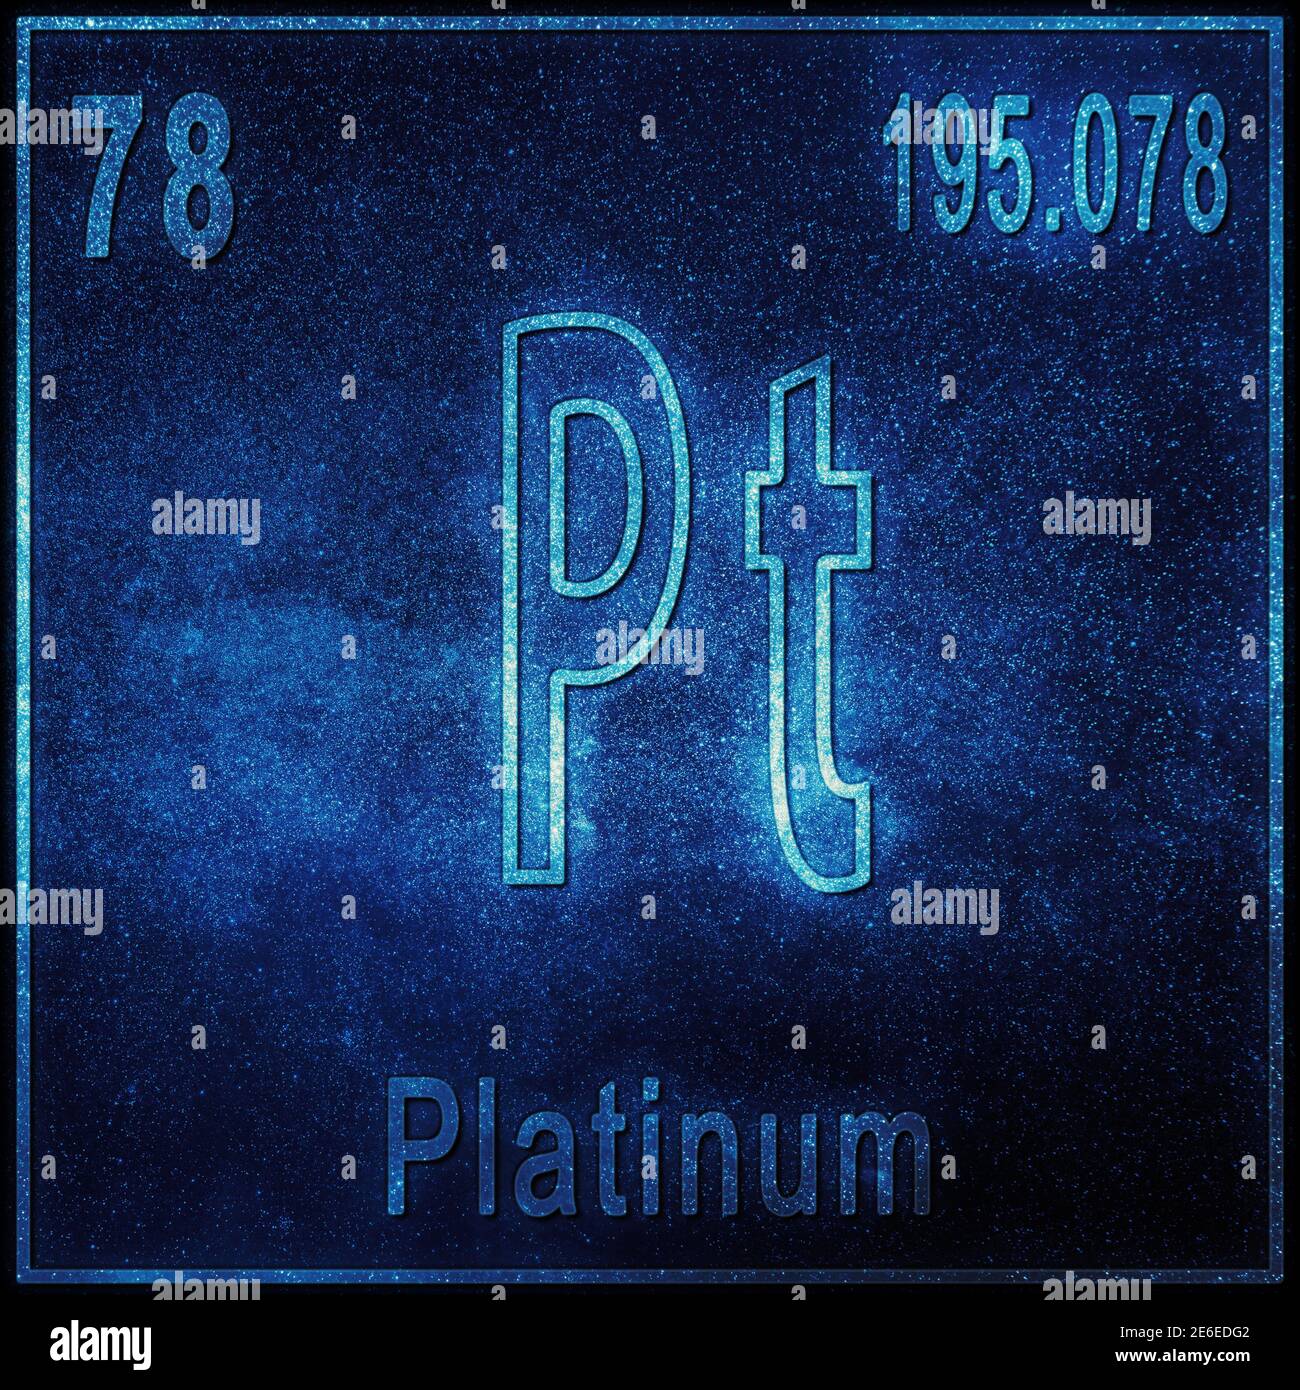 Platin-chemisches Element, Zeichen mit Ordnungszahl und Ordnungsgewicht,  Periodensystem Stockfotografie - Alamy